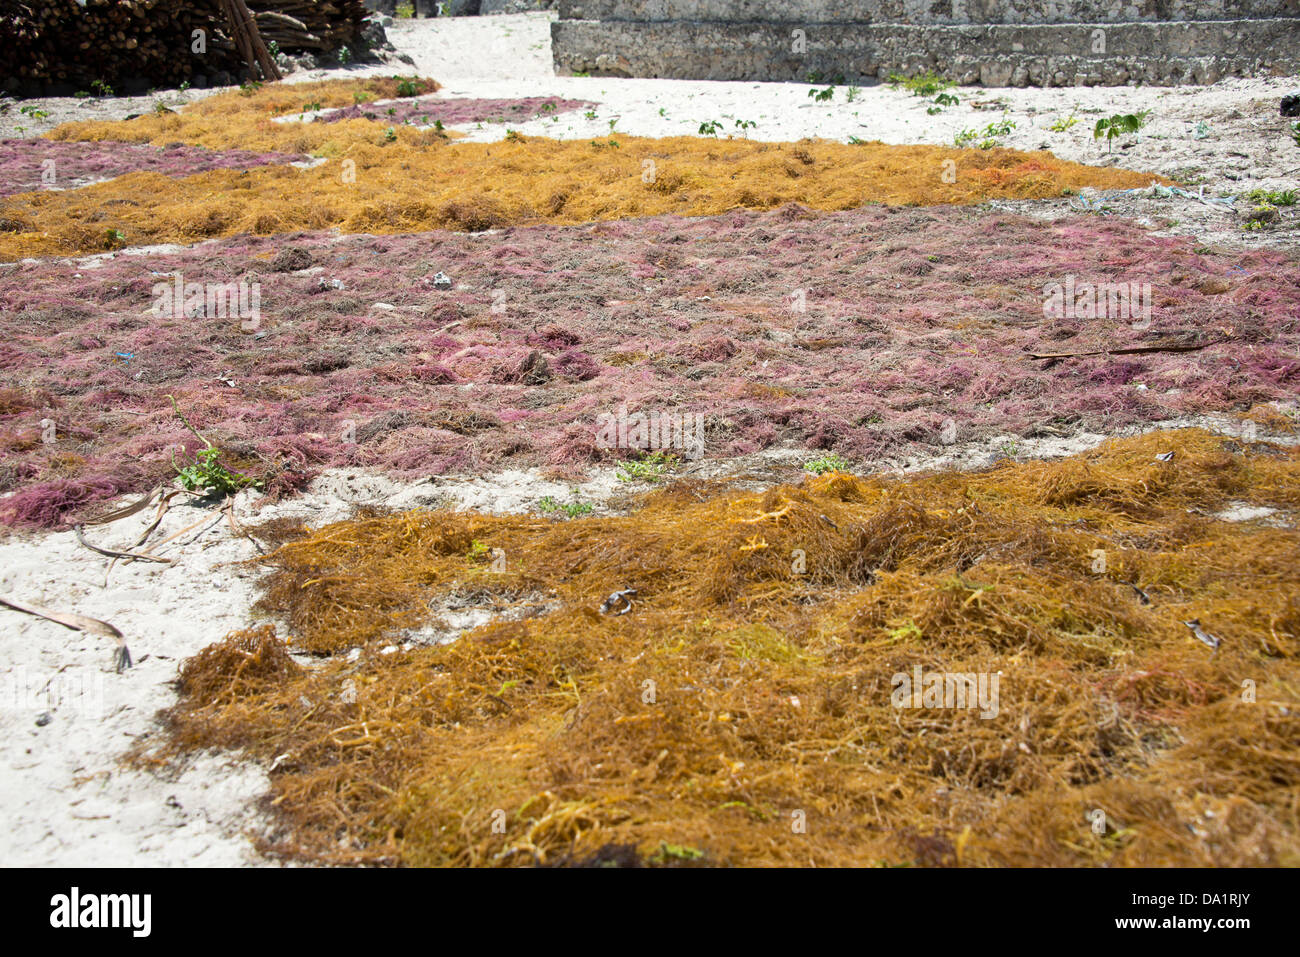 Algen, trocknen in der Sonne, Jambiani, Zanzibar, Vereinigte Republik Tansania, Ostafrika. Stockfoto